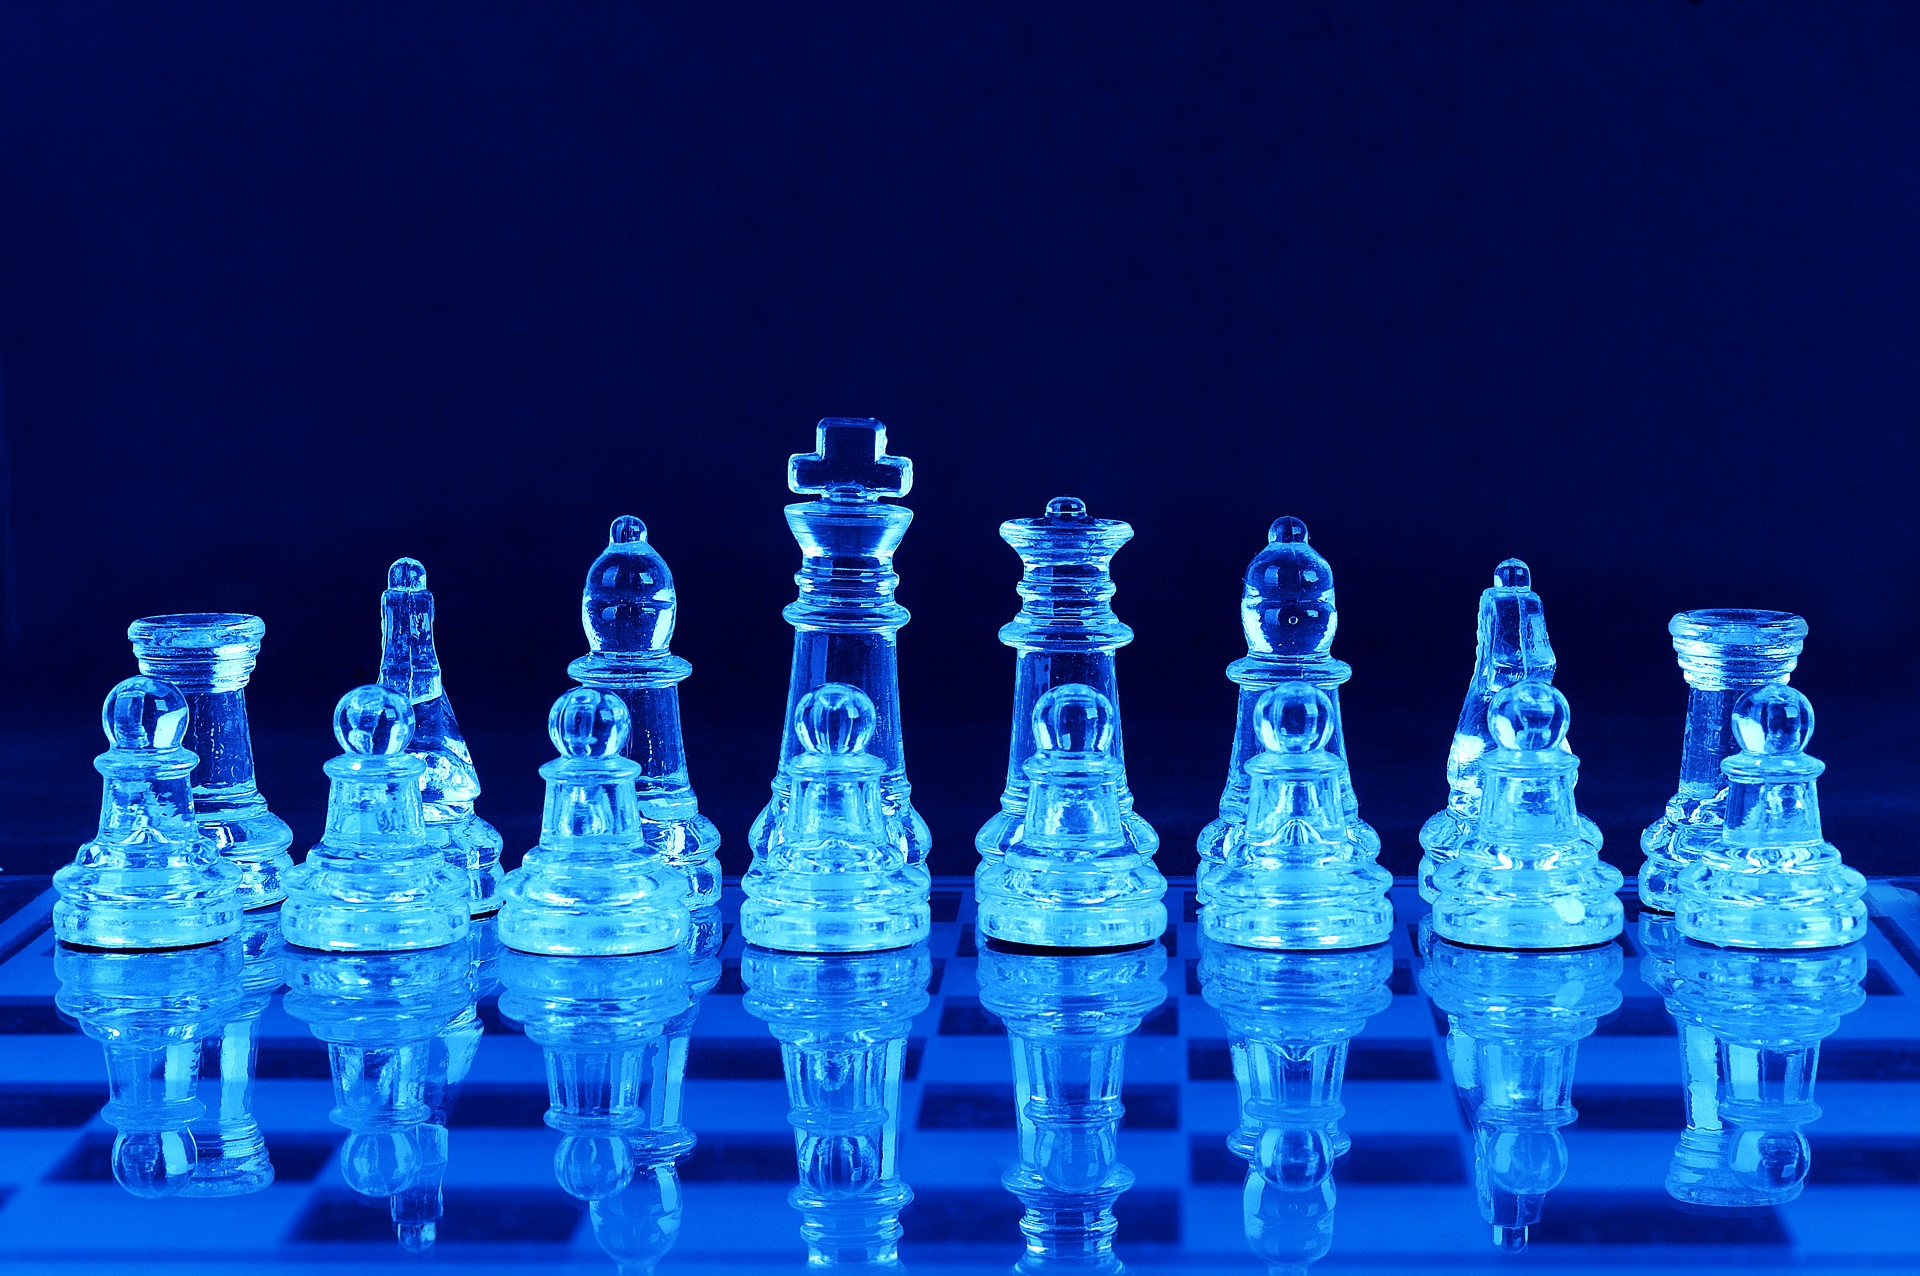 Шахматные фигуры в синих тонах